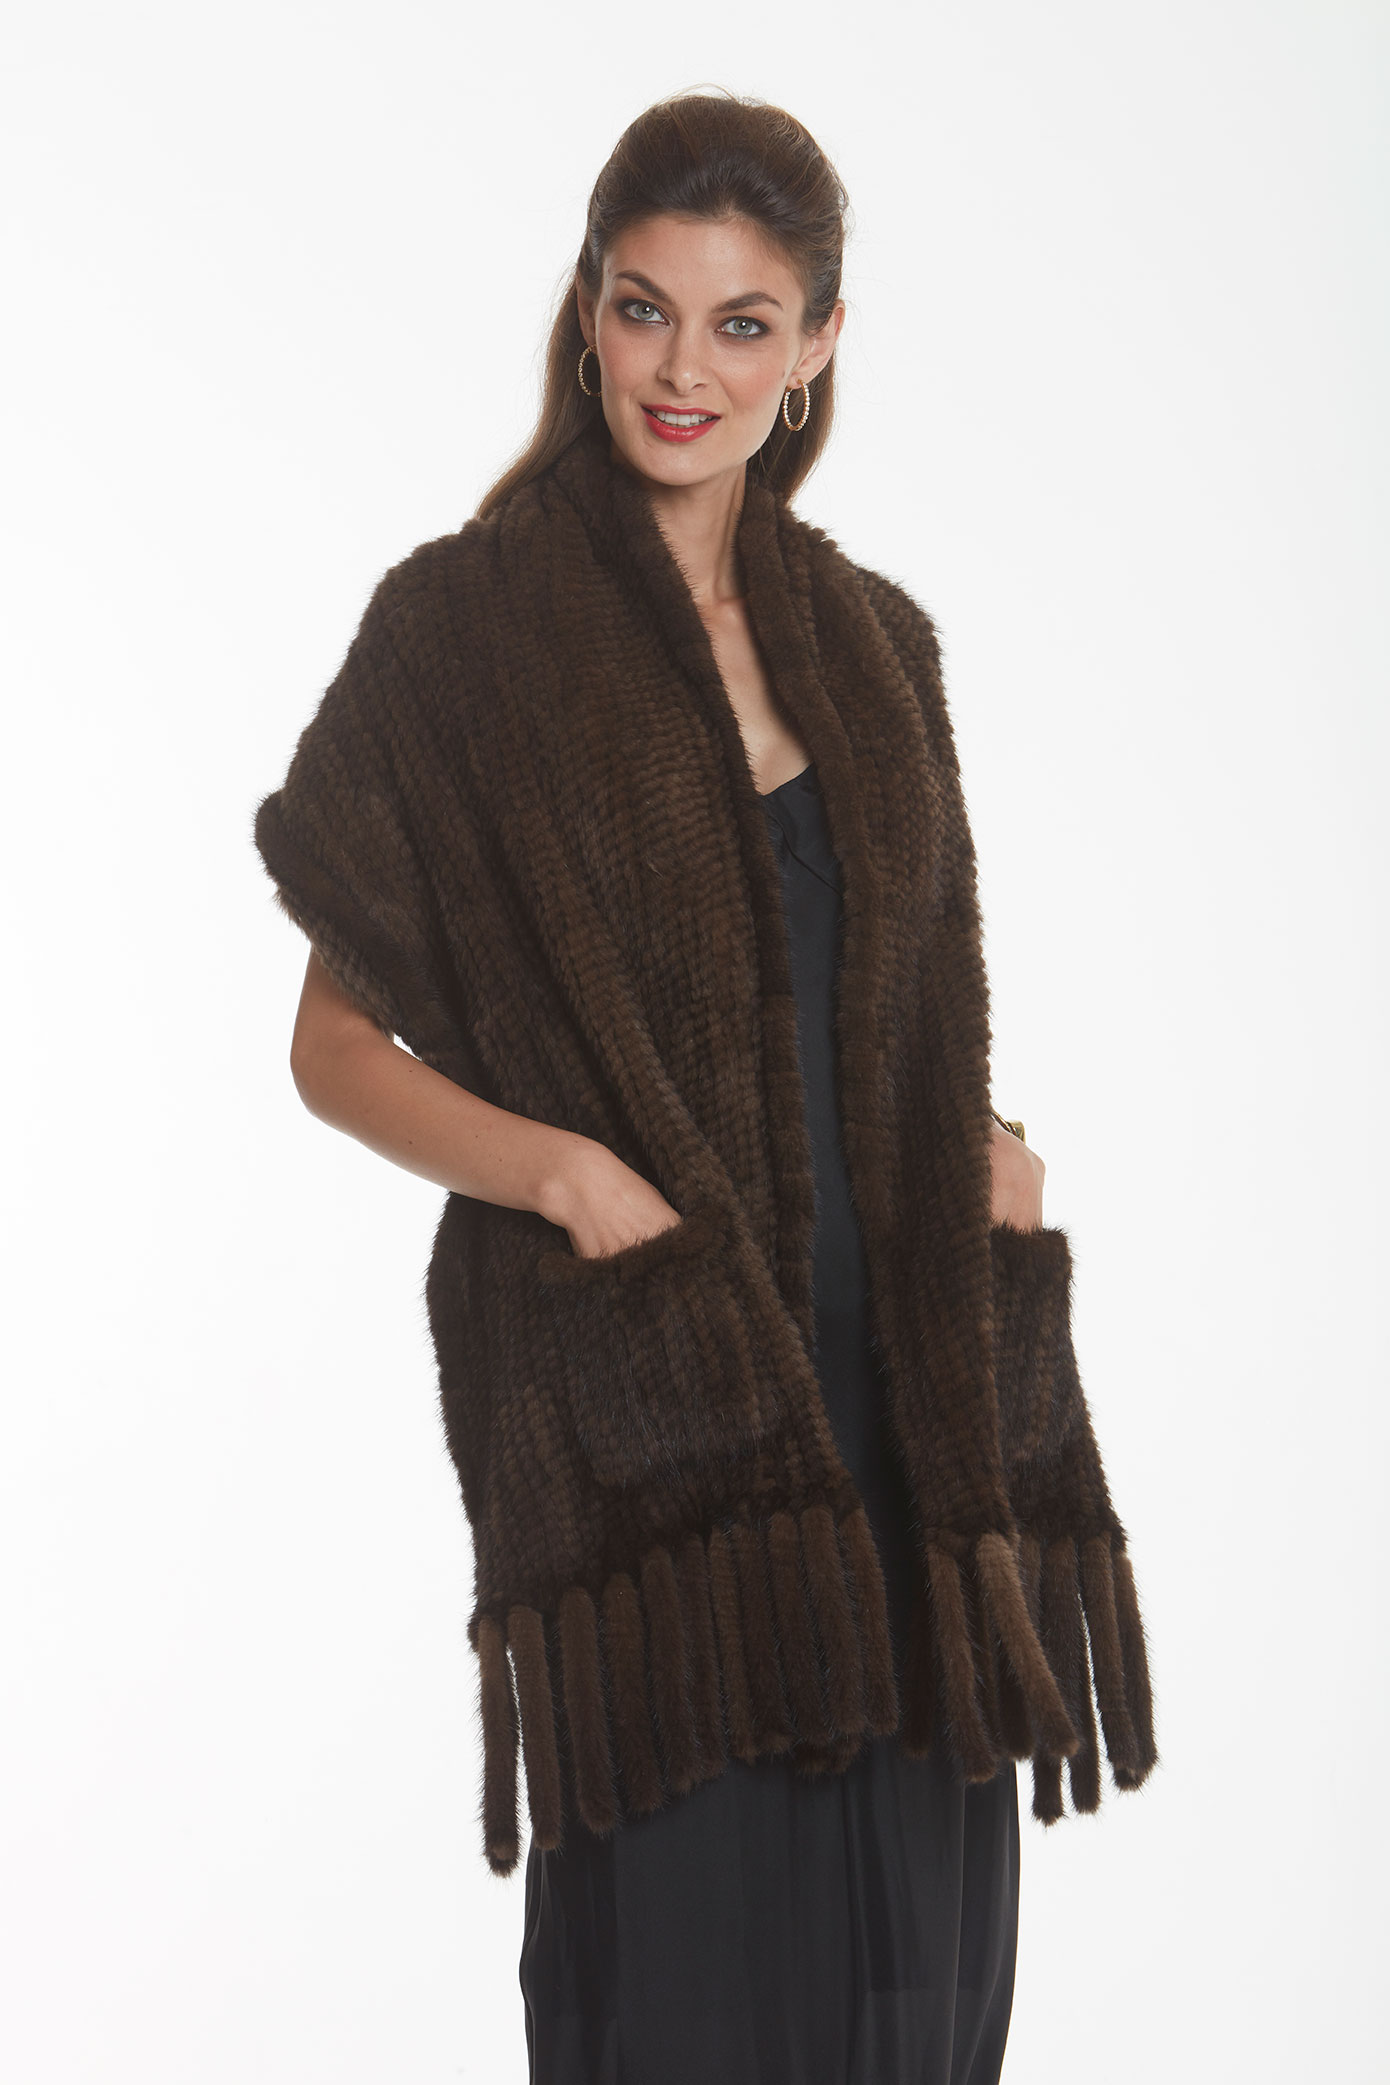 Mahogany Mink Wrap Shawl-Flirty Fringes – Madison Avenue Mall Furs